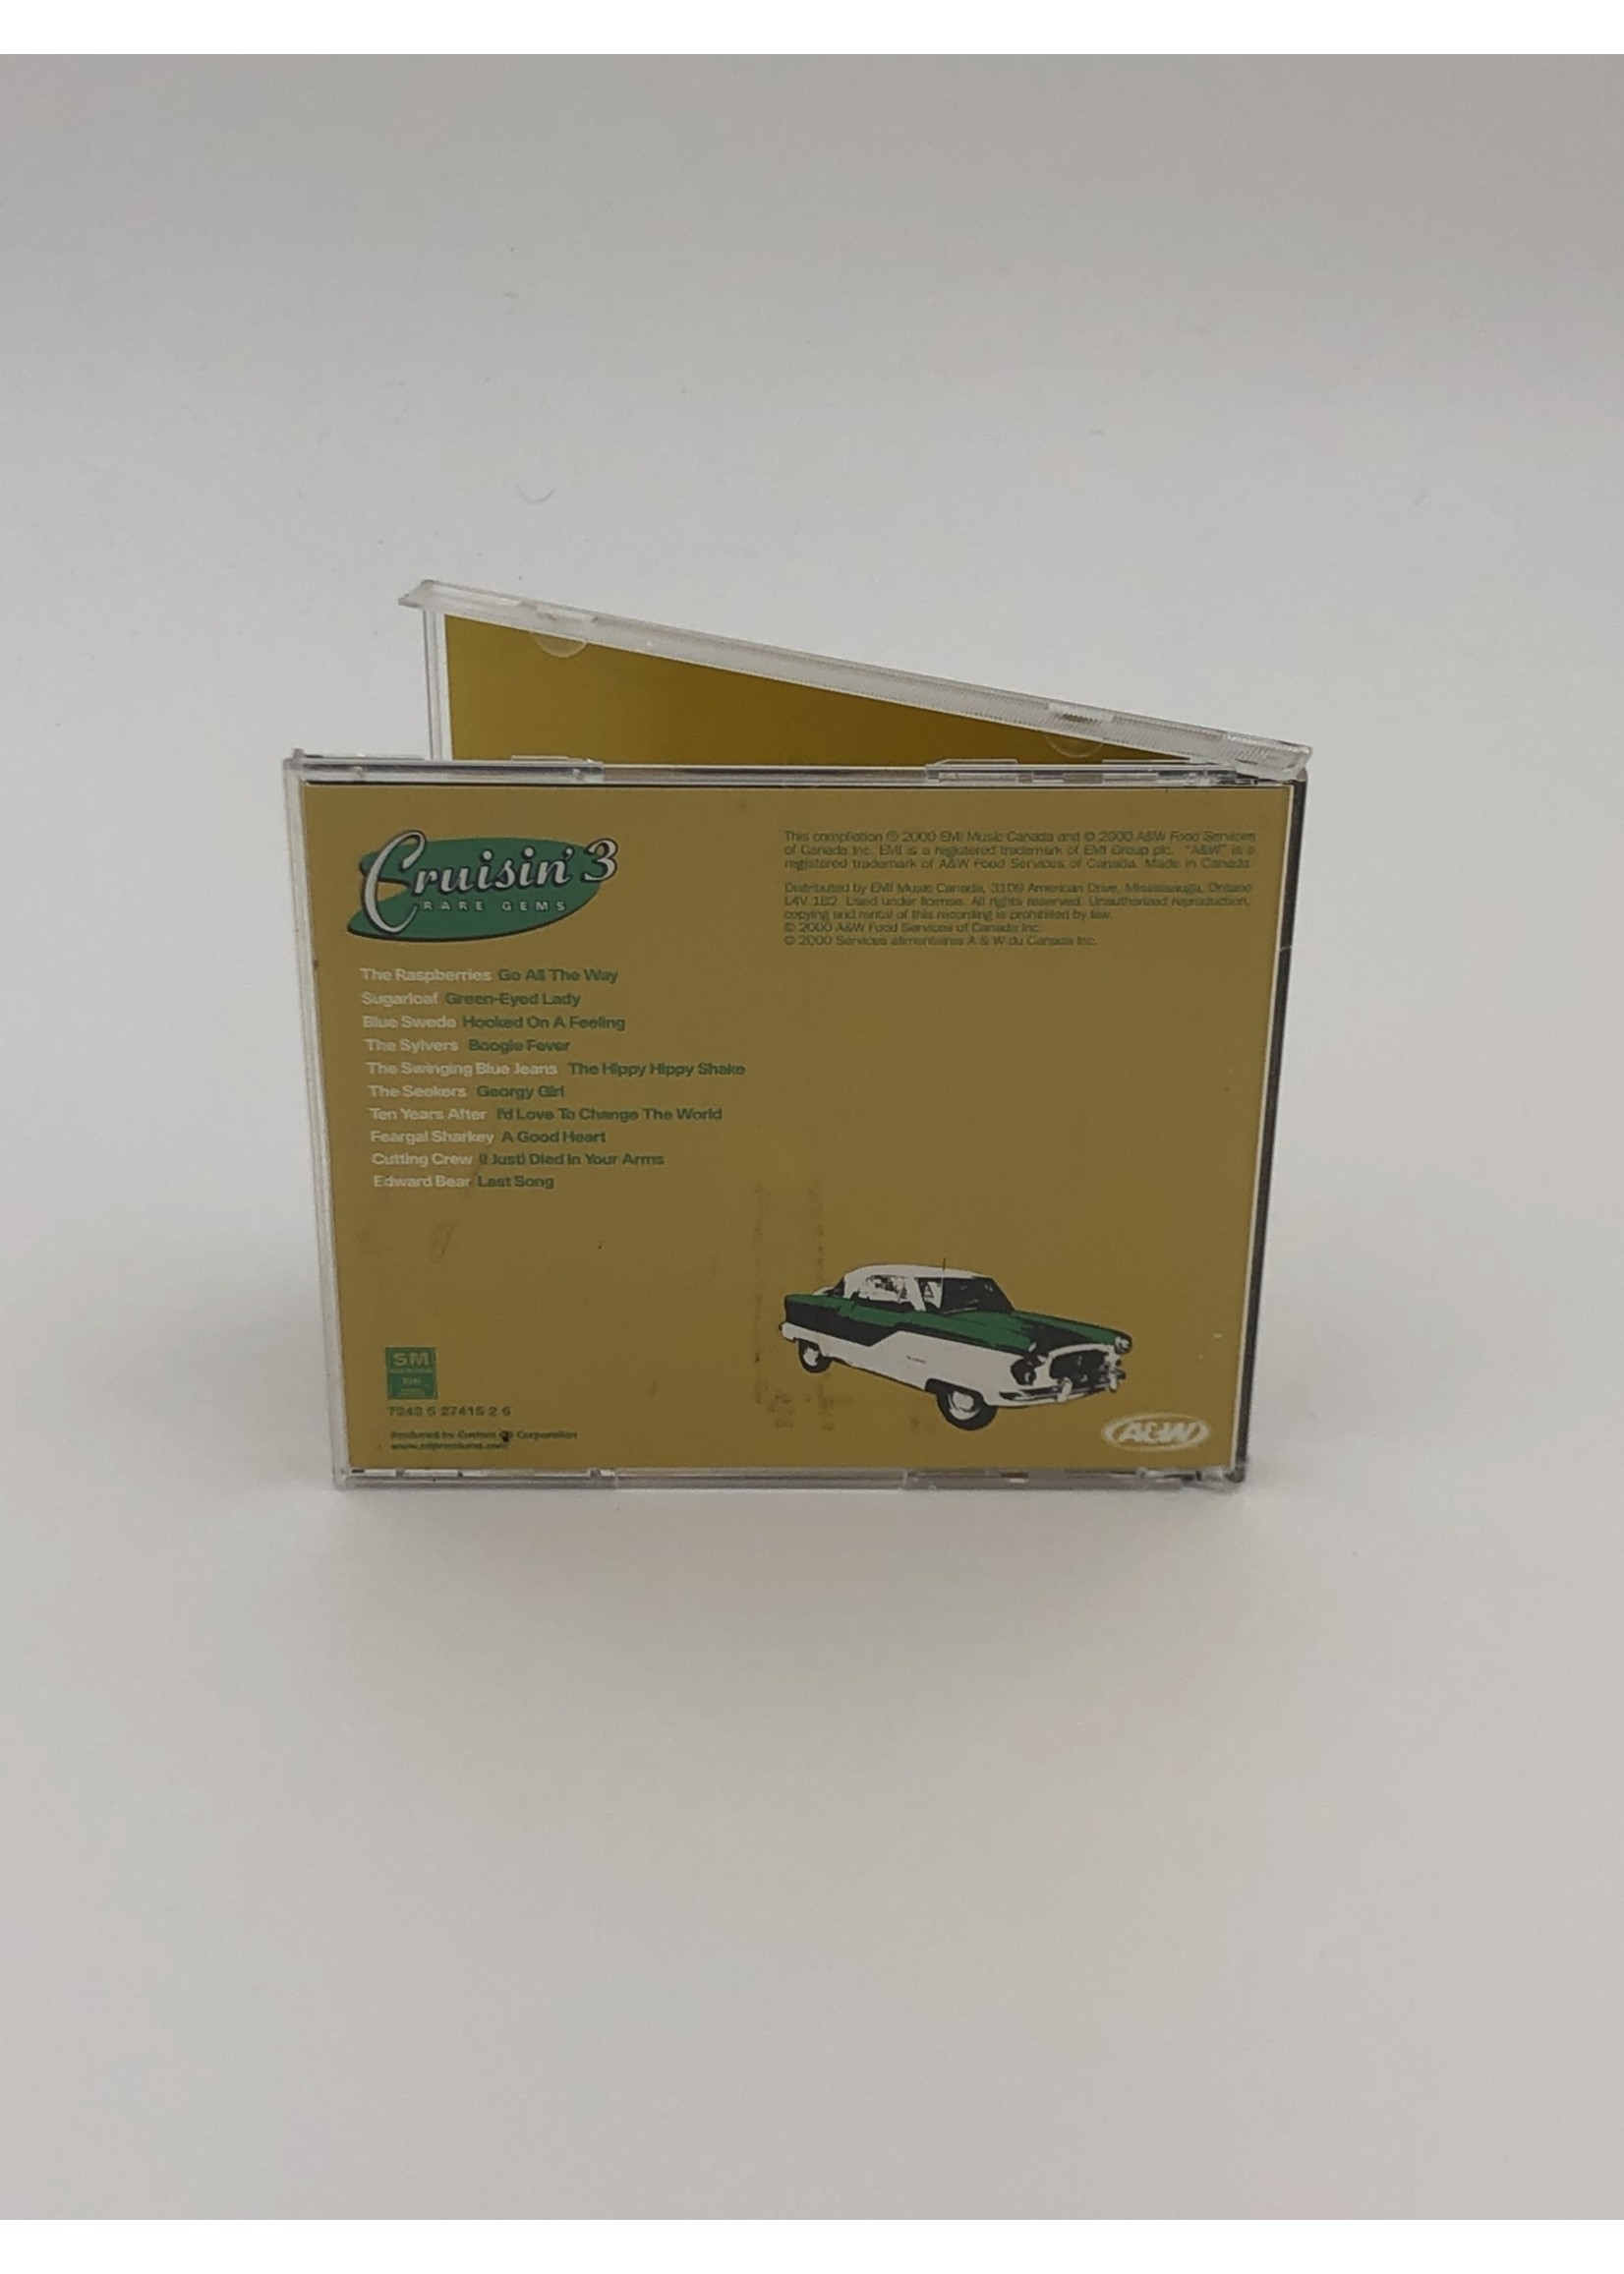 CD A&W Cruisin 3 Rare Gems CD